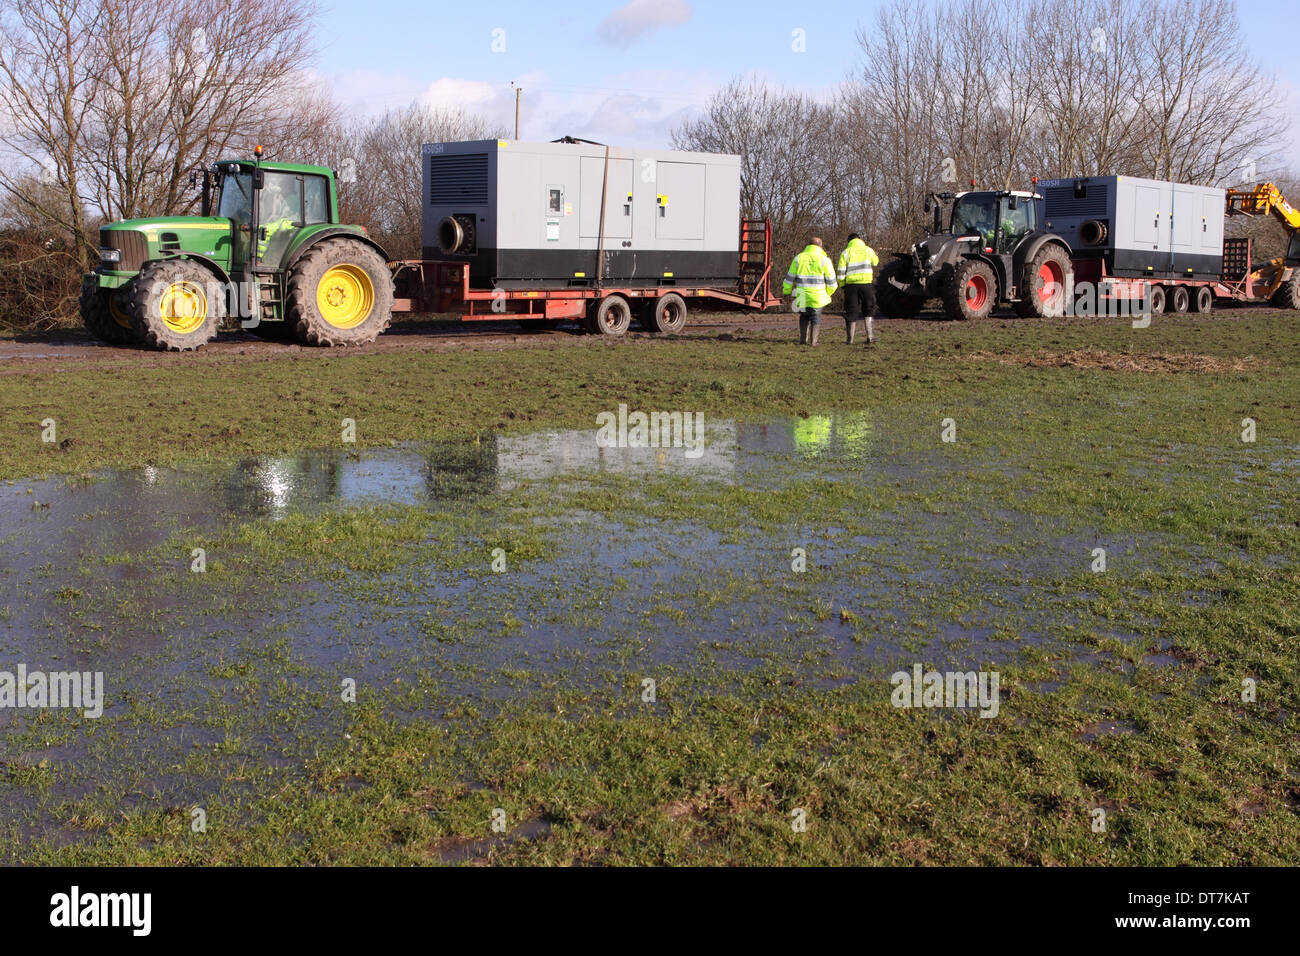 Station de pompage de la Lande, près de Burrowbridge, Somerset, Royaume-Uni - 11 février 2014. Le personnel de l'Agence de l'environnement le plan de déploiement de deux grandes pompes 450SH d'une ventouse pour pomper l'eau dans la rivière adjacente Parrett. Banque D'Images